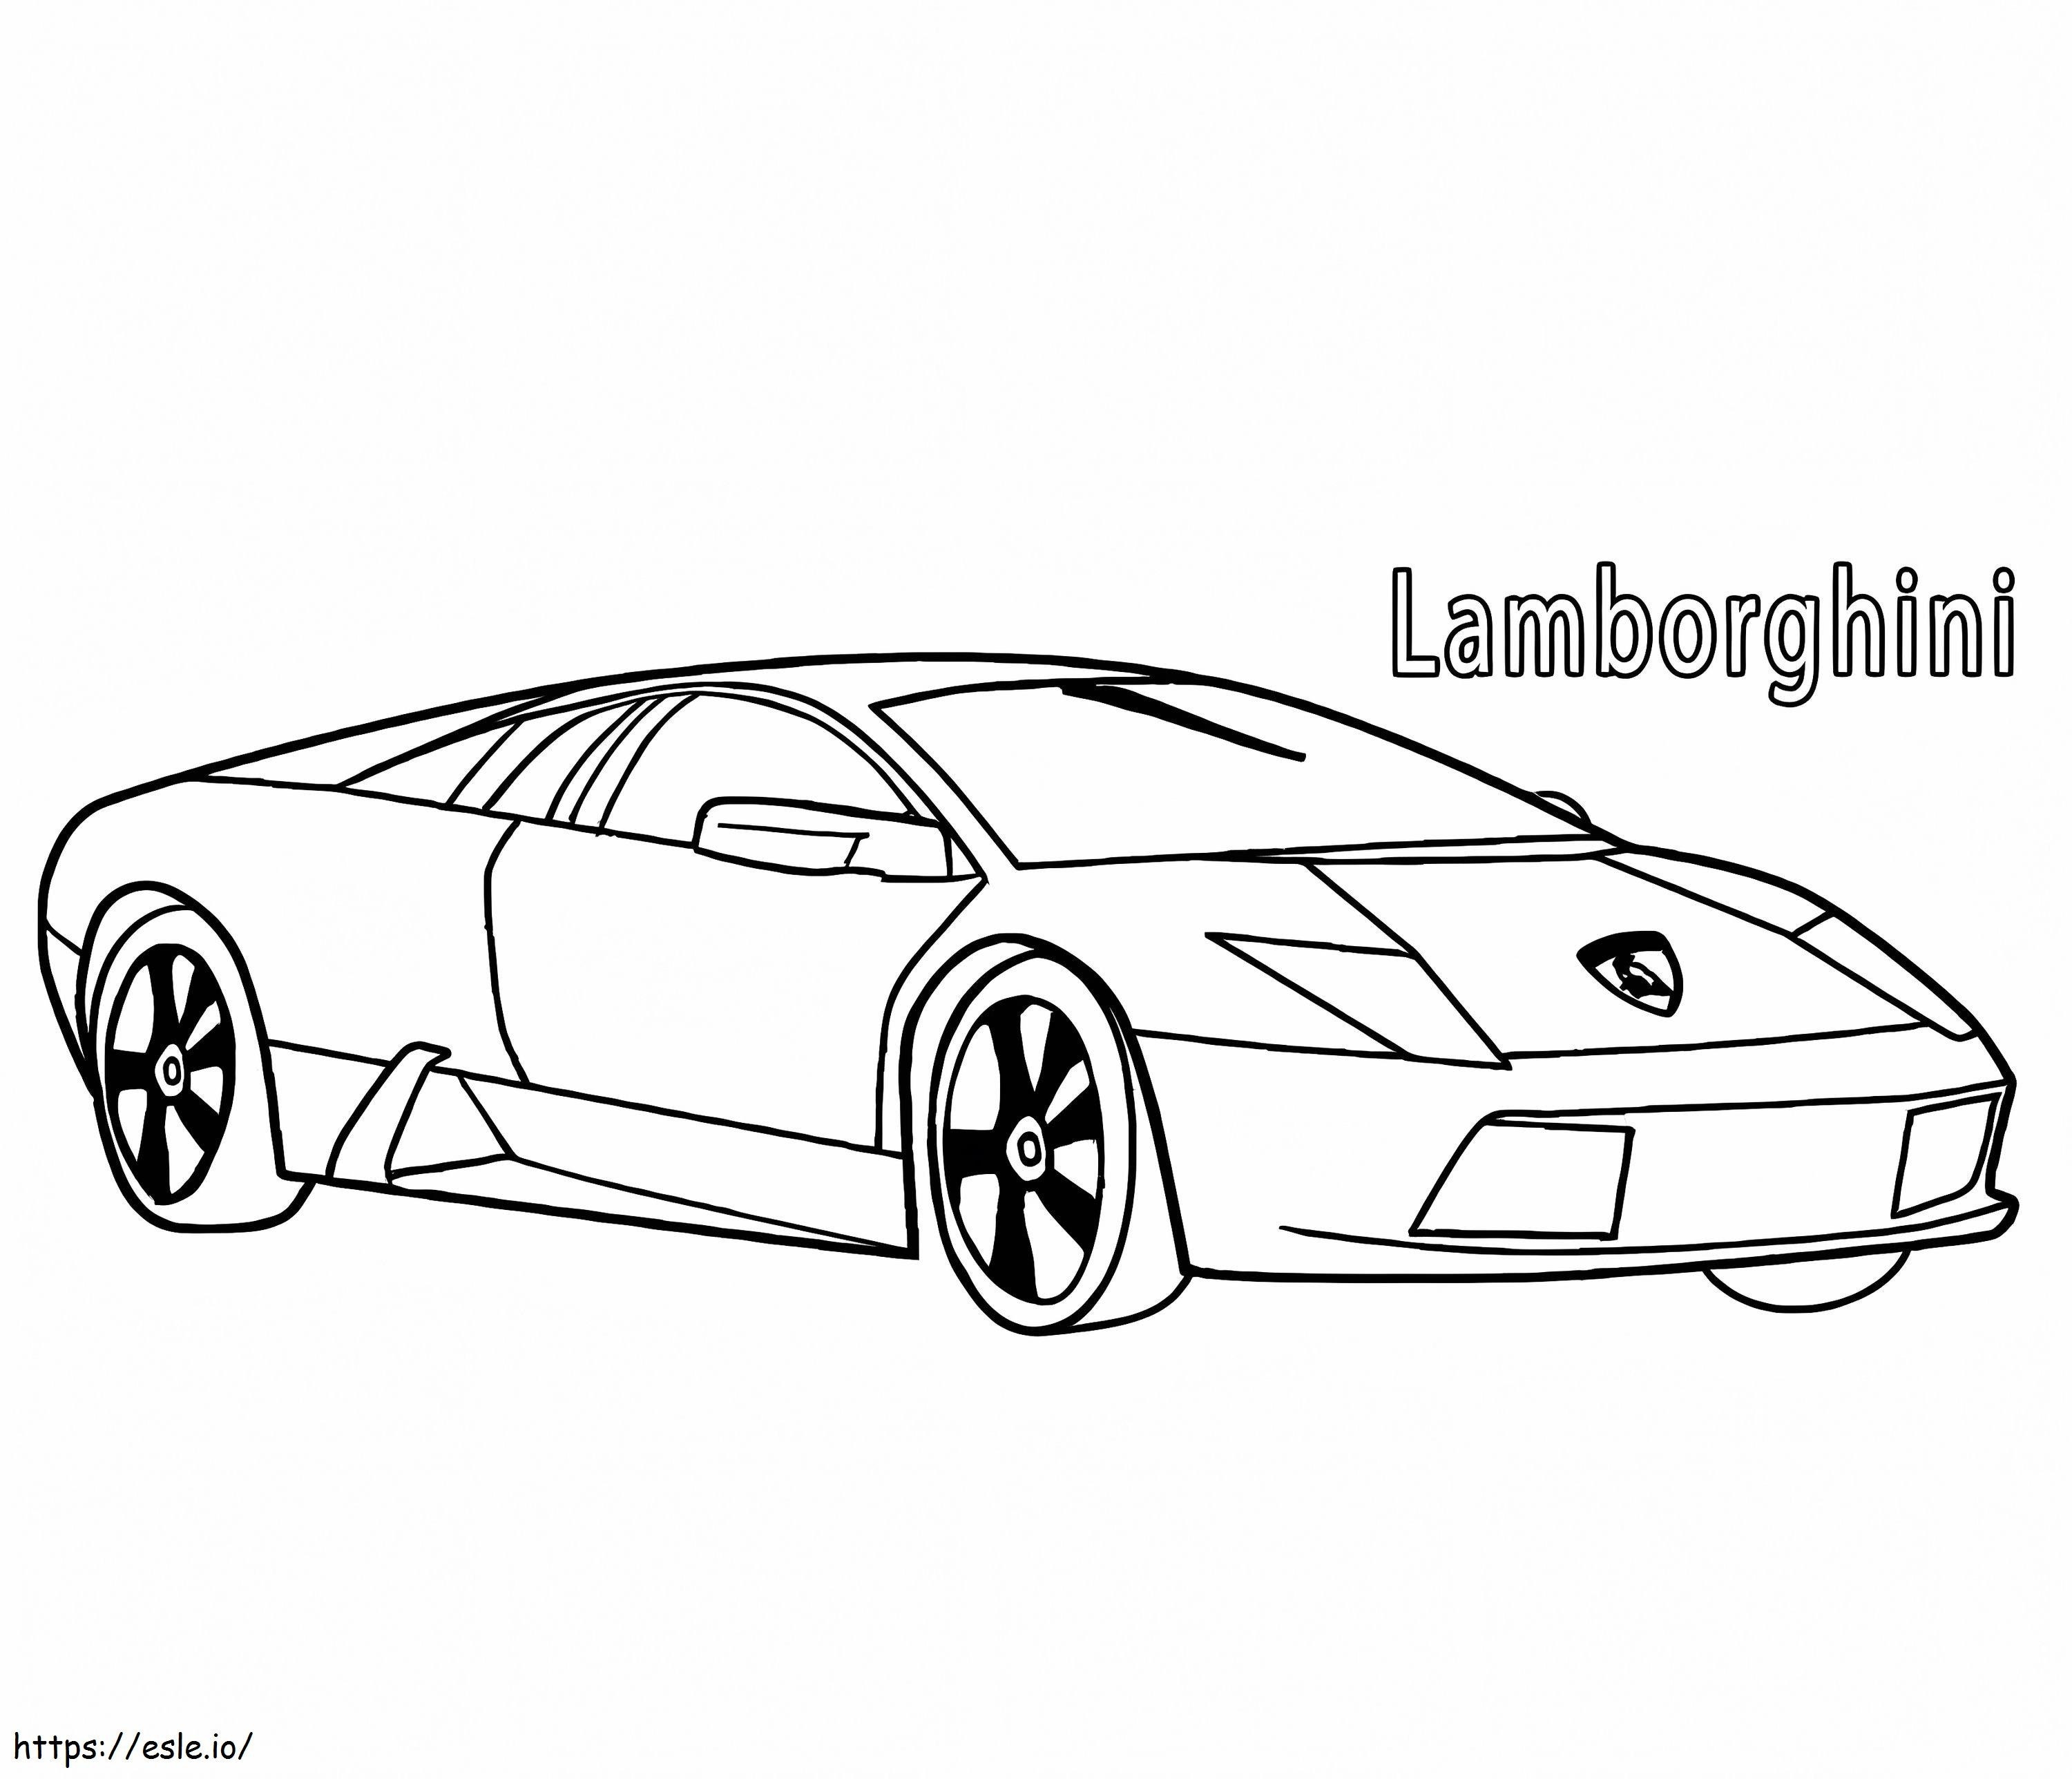 Lamborghini 3 kolorowanka